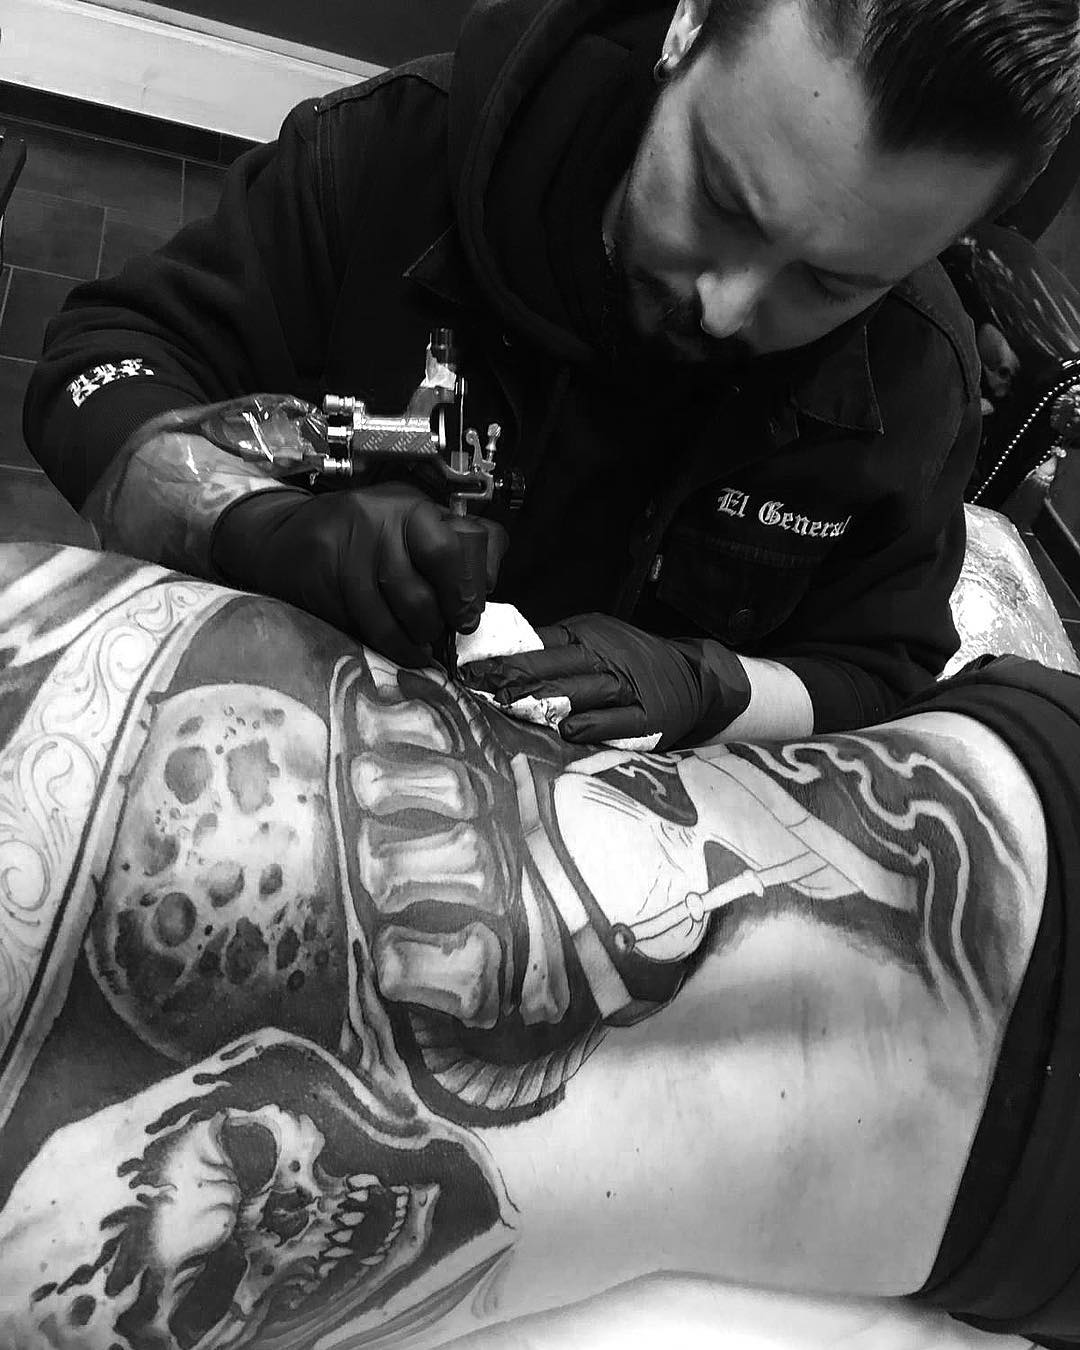 tatuaggio chicano by @adriano elgeneral 50 1